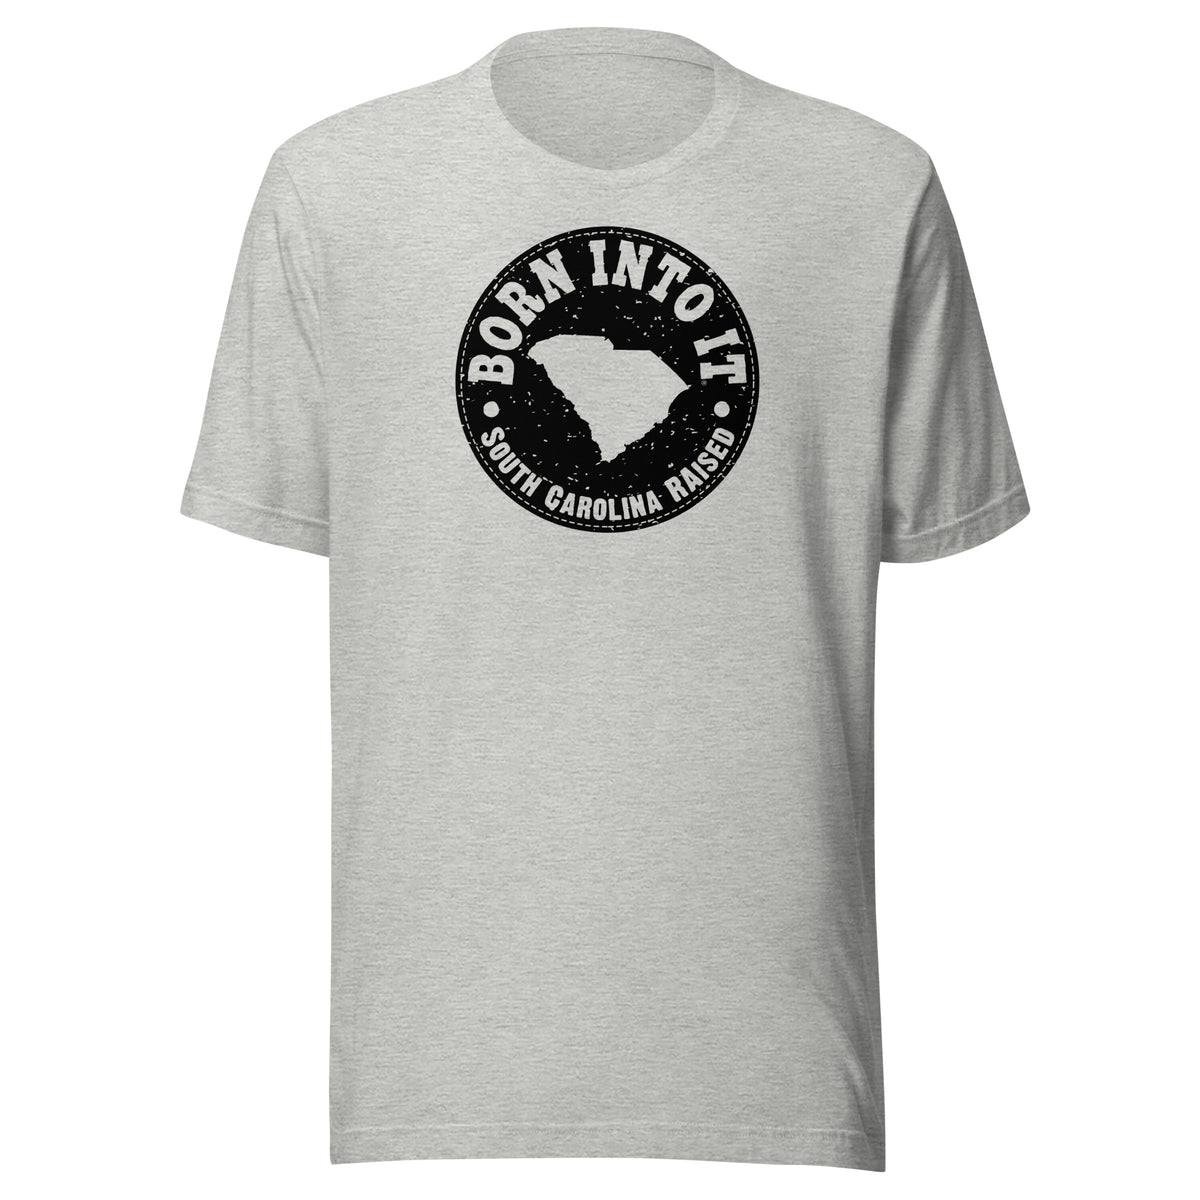 South Carolina Raised Unisex T-Shirt